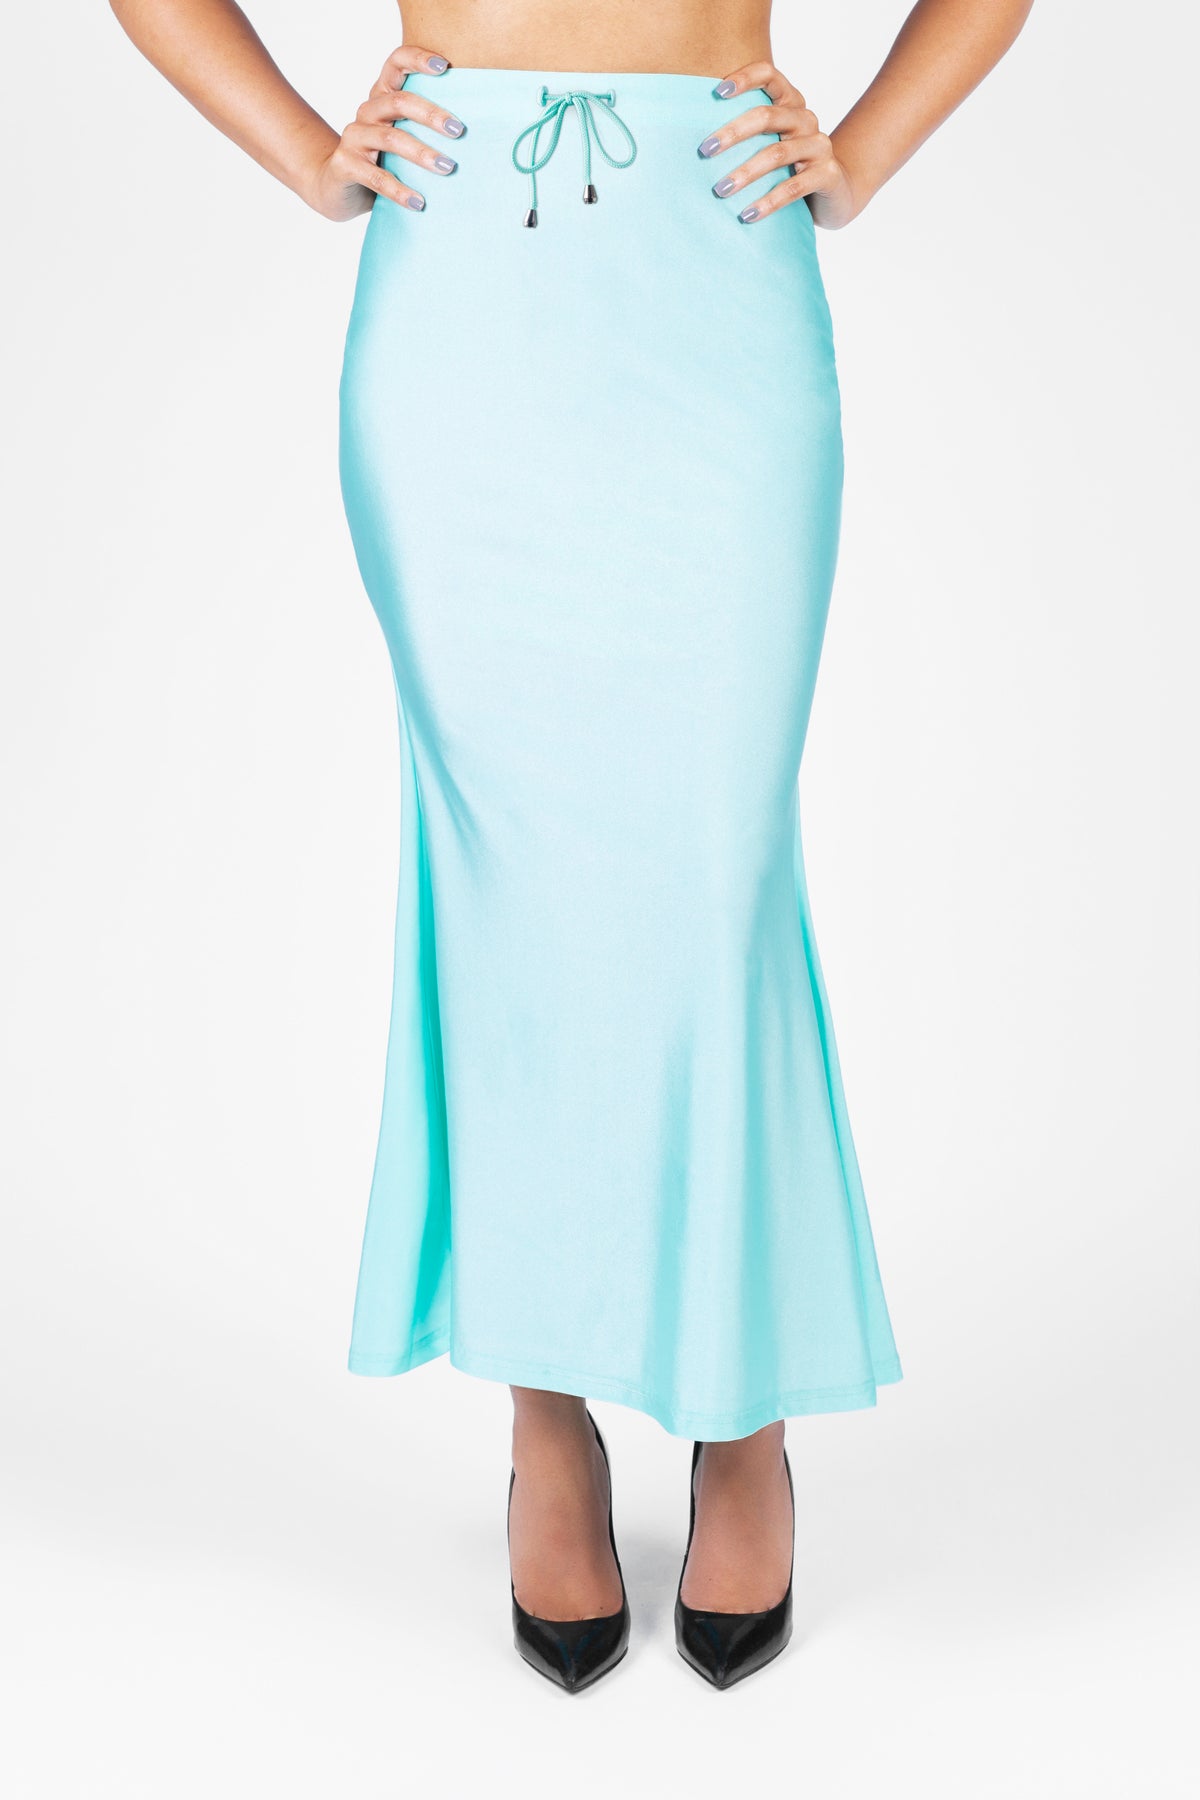 Saree Shapewear Petticoat 2.0 – Laksharaa Sarees